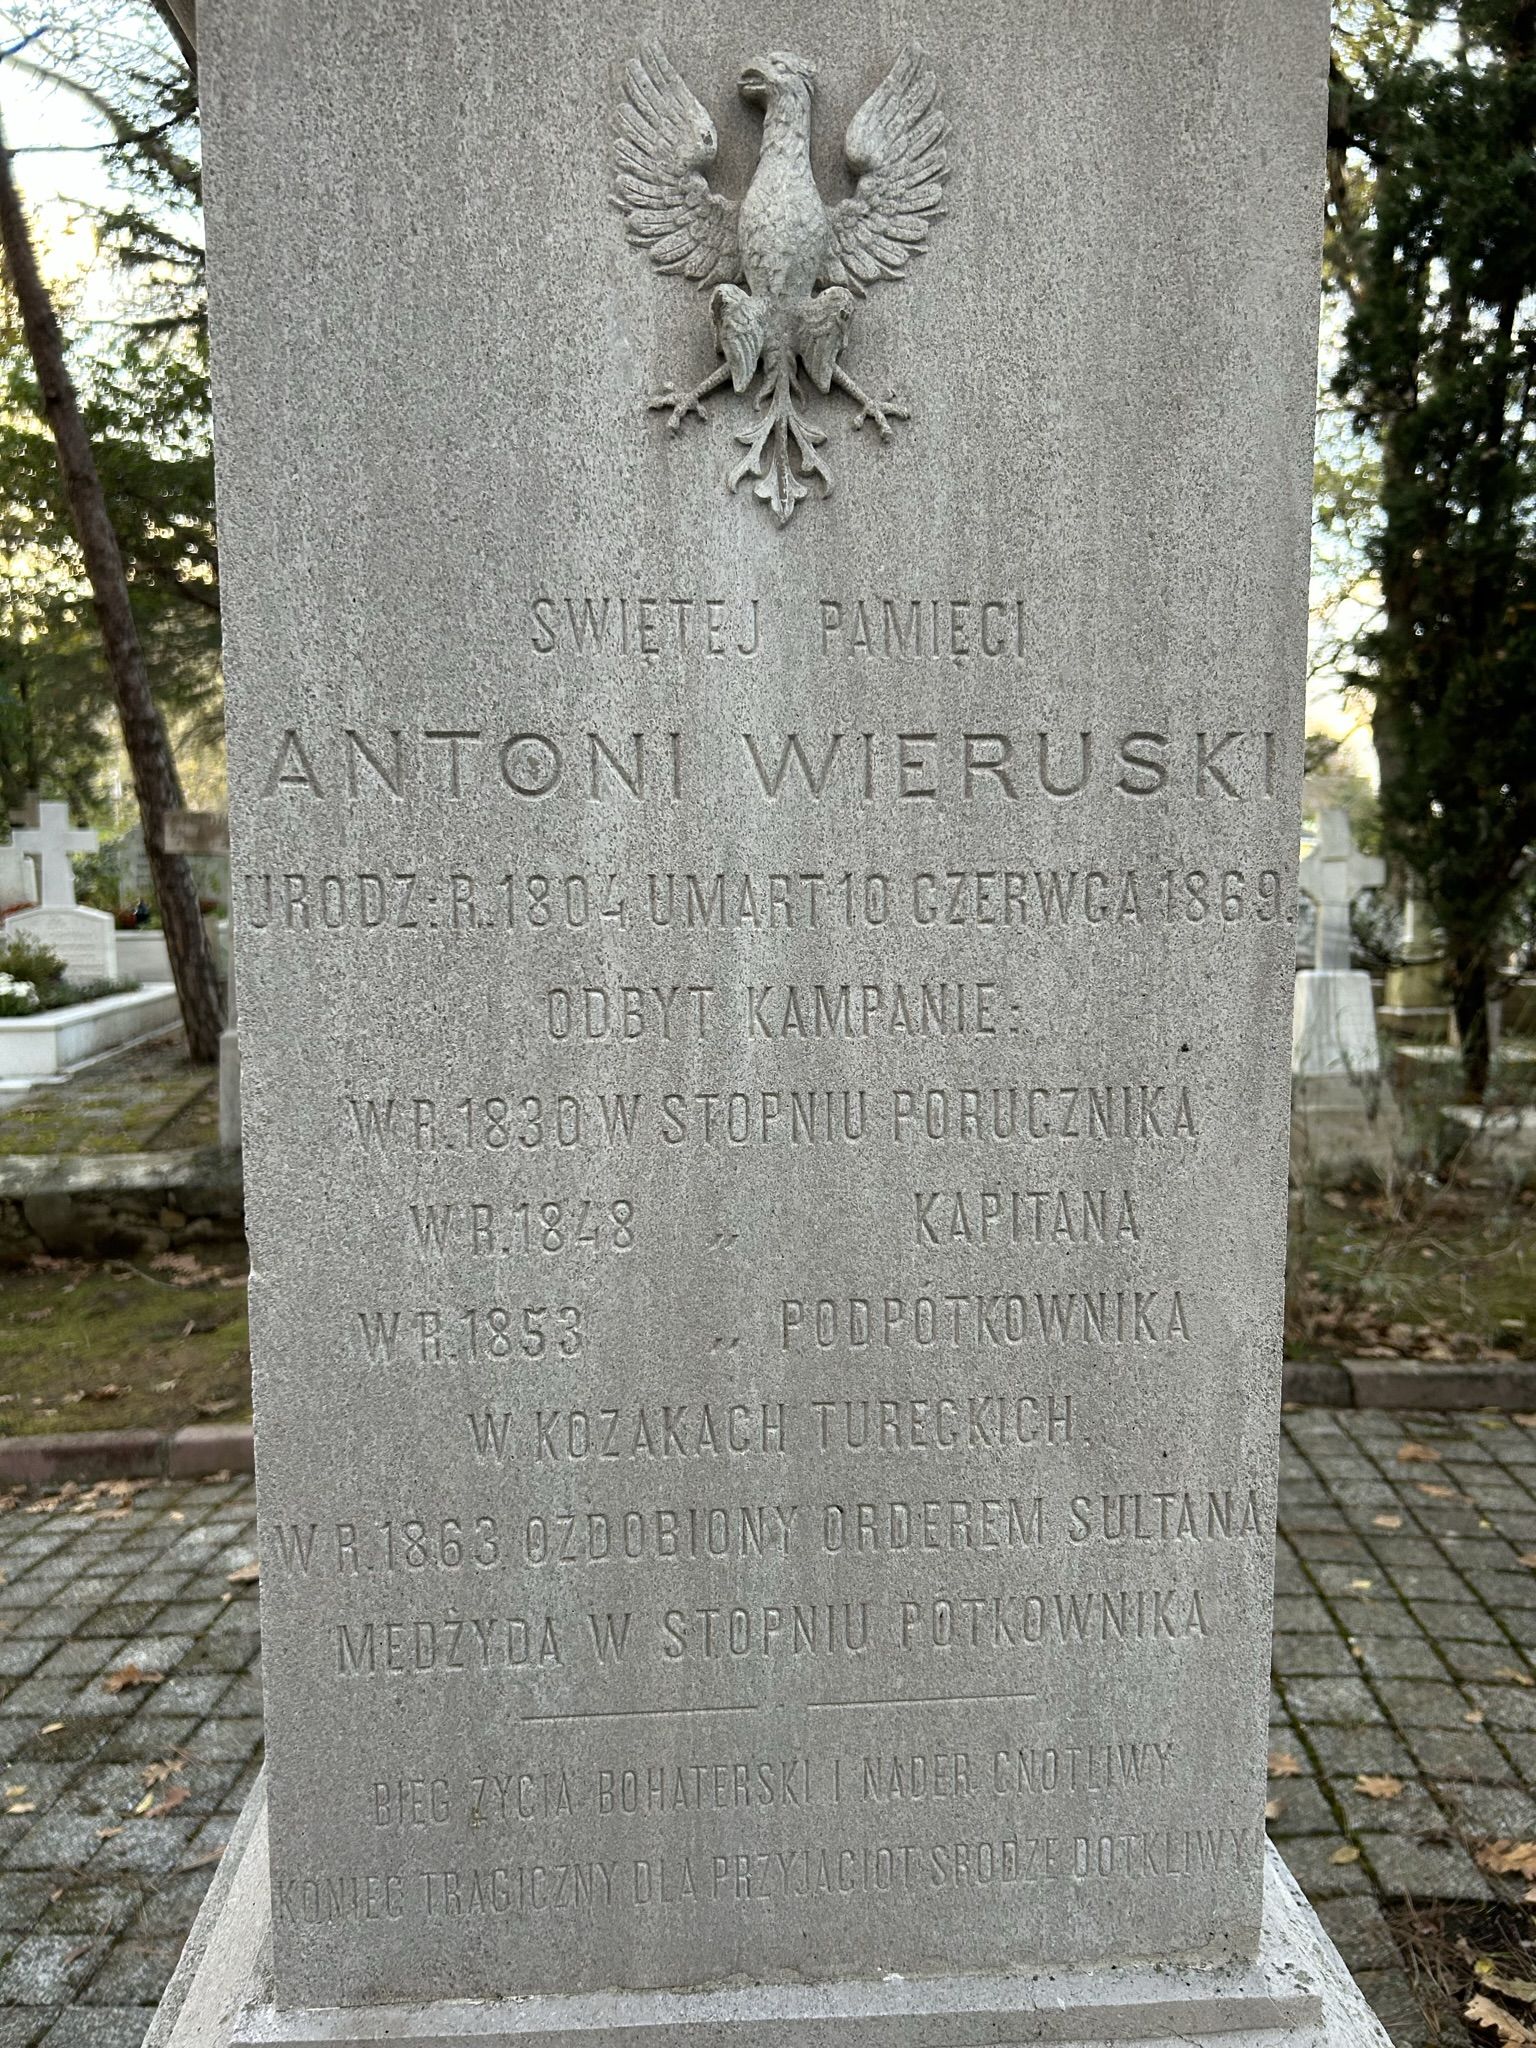 Inskrypcja z nagrobka Antoniego Wieruskiego, cmentarz katolicki w Adampolu